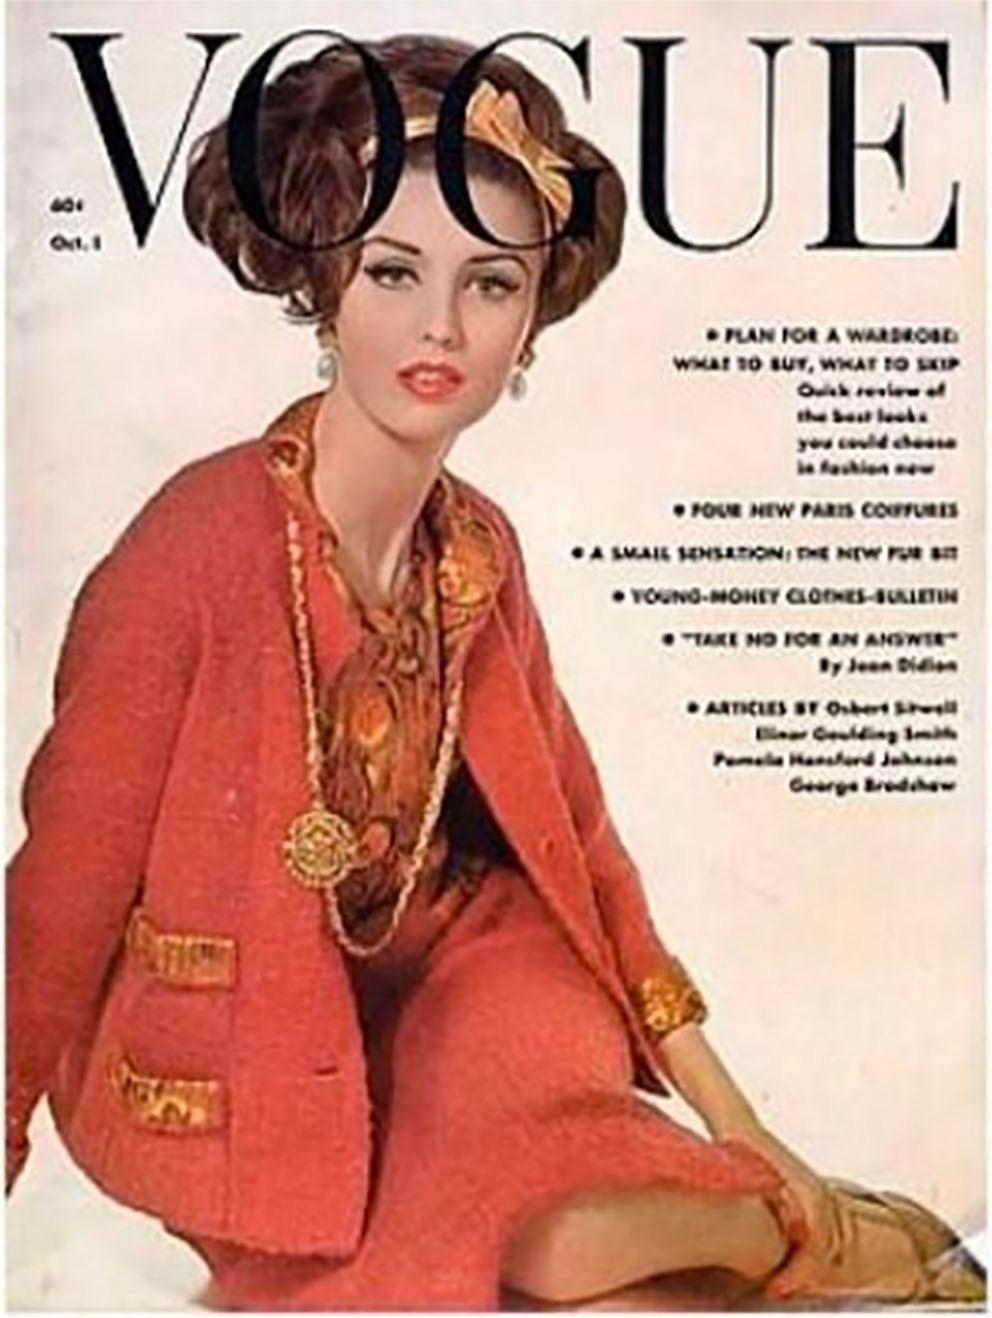 1961 Très rare top en soie Haute Couture Chanel comprenant une ouverture à bouton pression au dos, avec des boutons décoratifs, un motif ethnique en lurex de soie, une doublure en soie.
Voir ci-joint les couvertures du Vogue français et du Elle